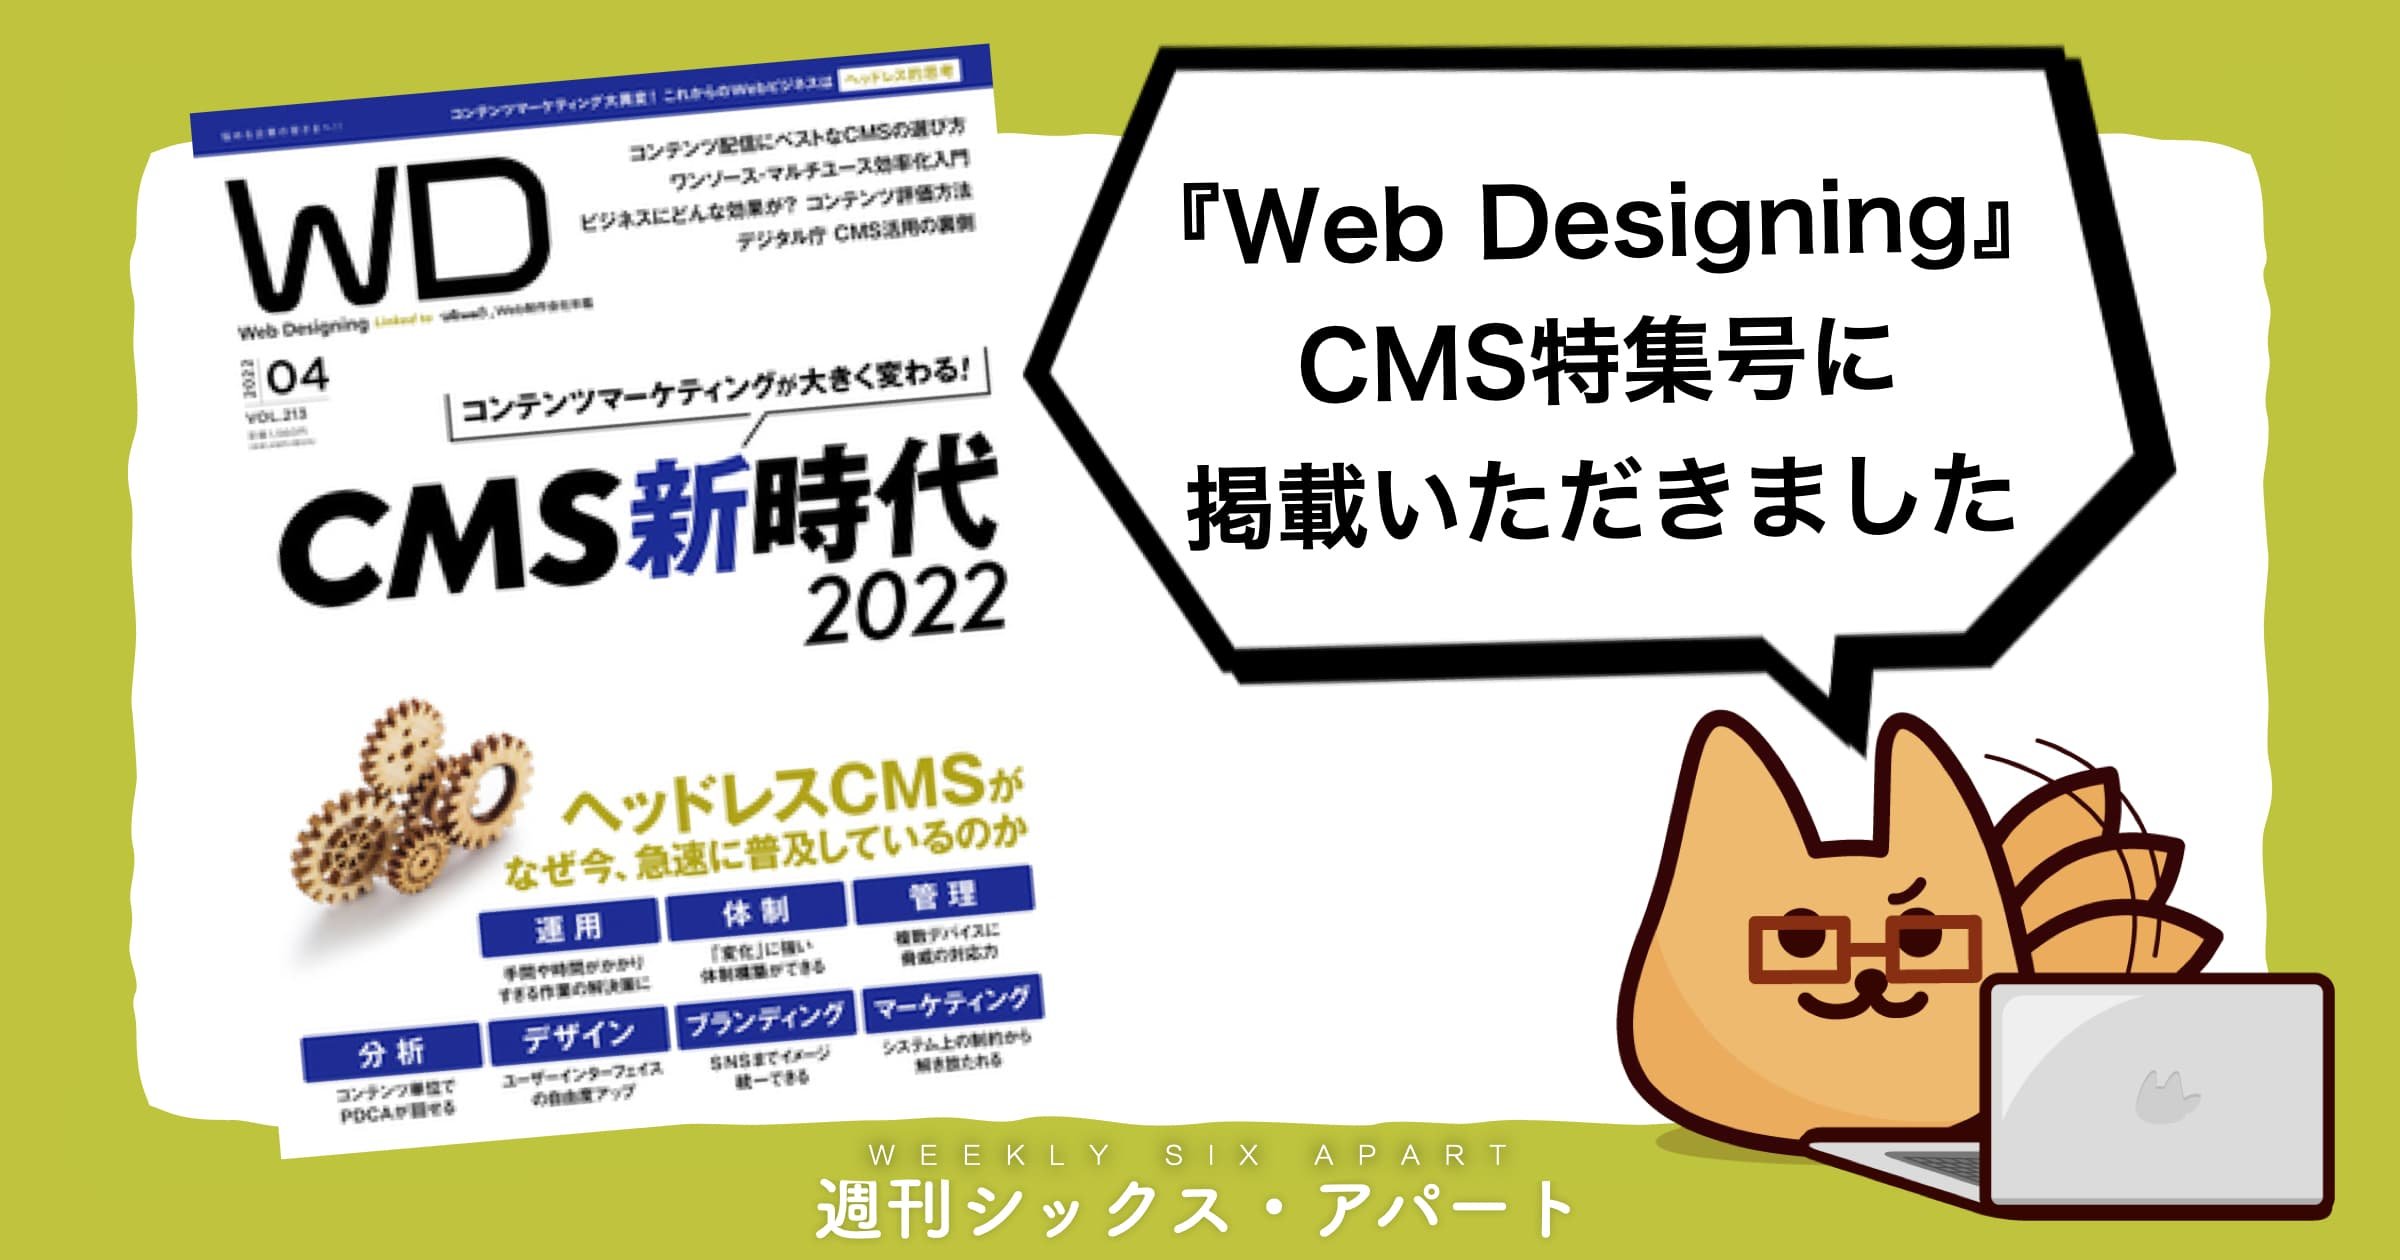 『Web Designing』2022年4月号で、MovableType.net をご紹介いただきました #週刊SA